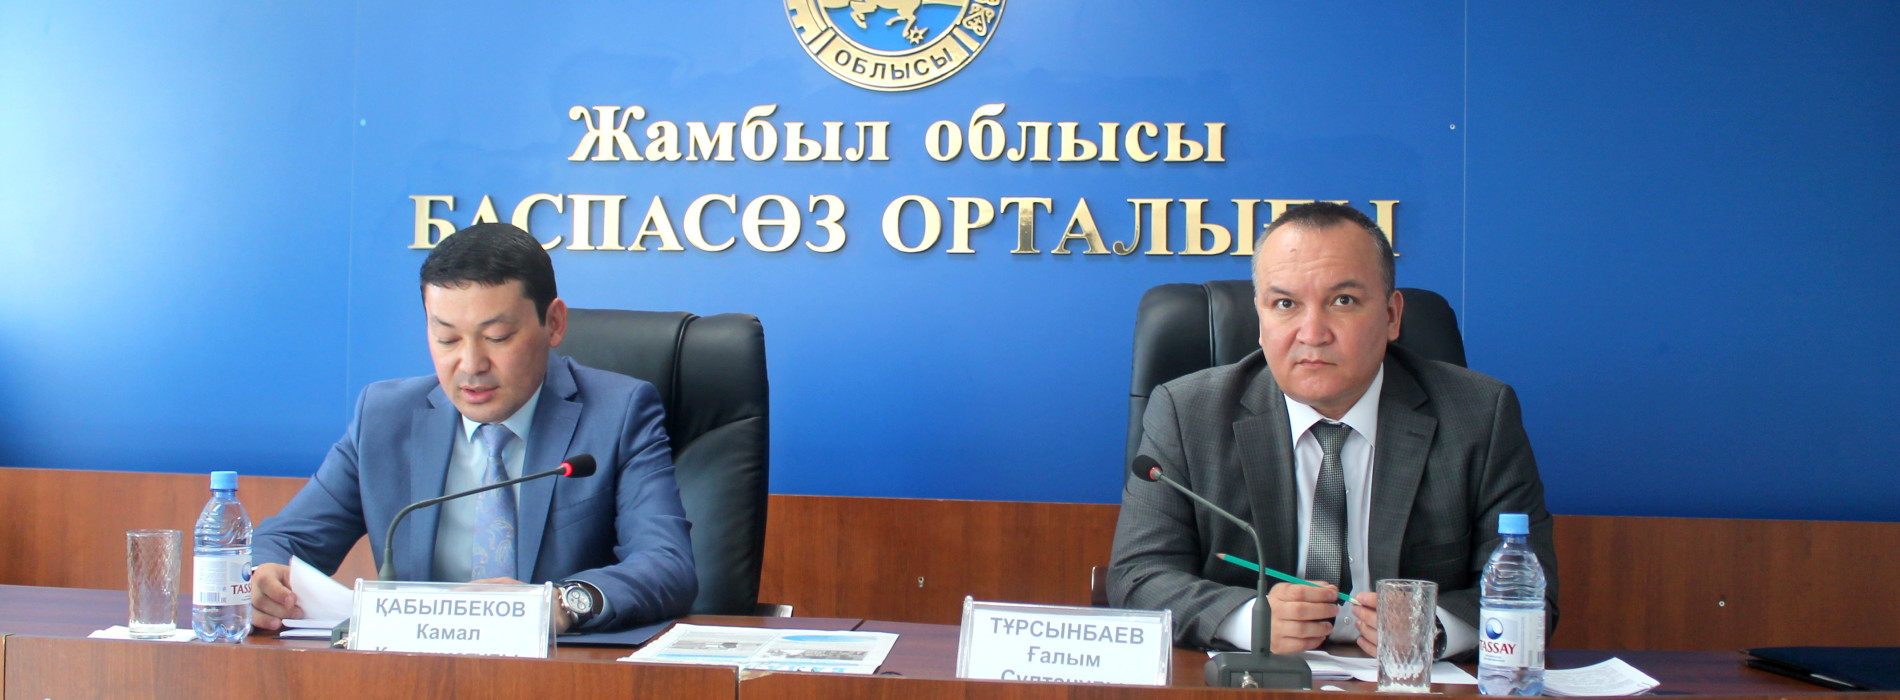 Жамбылской антикоррупционной службой выявлено 38 преступлений в реализации госпрограмм